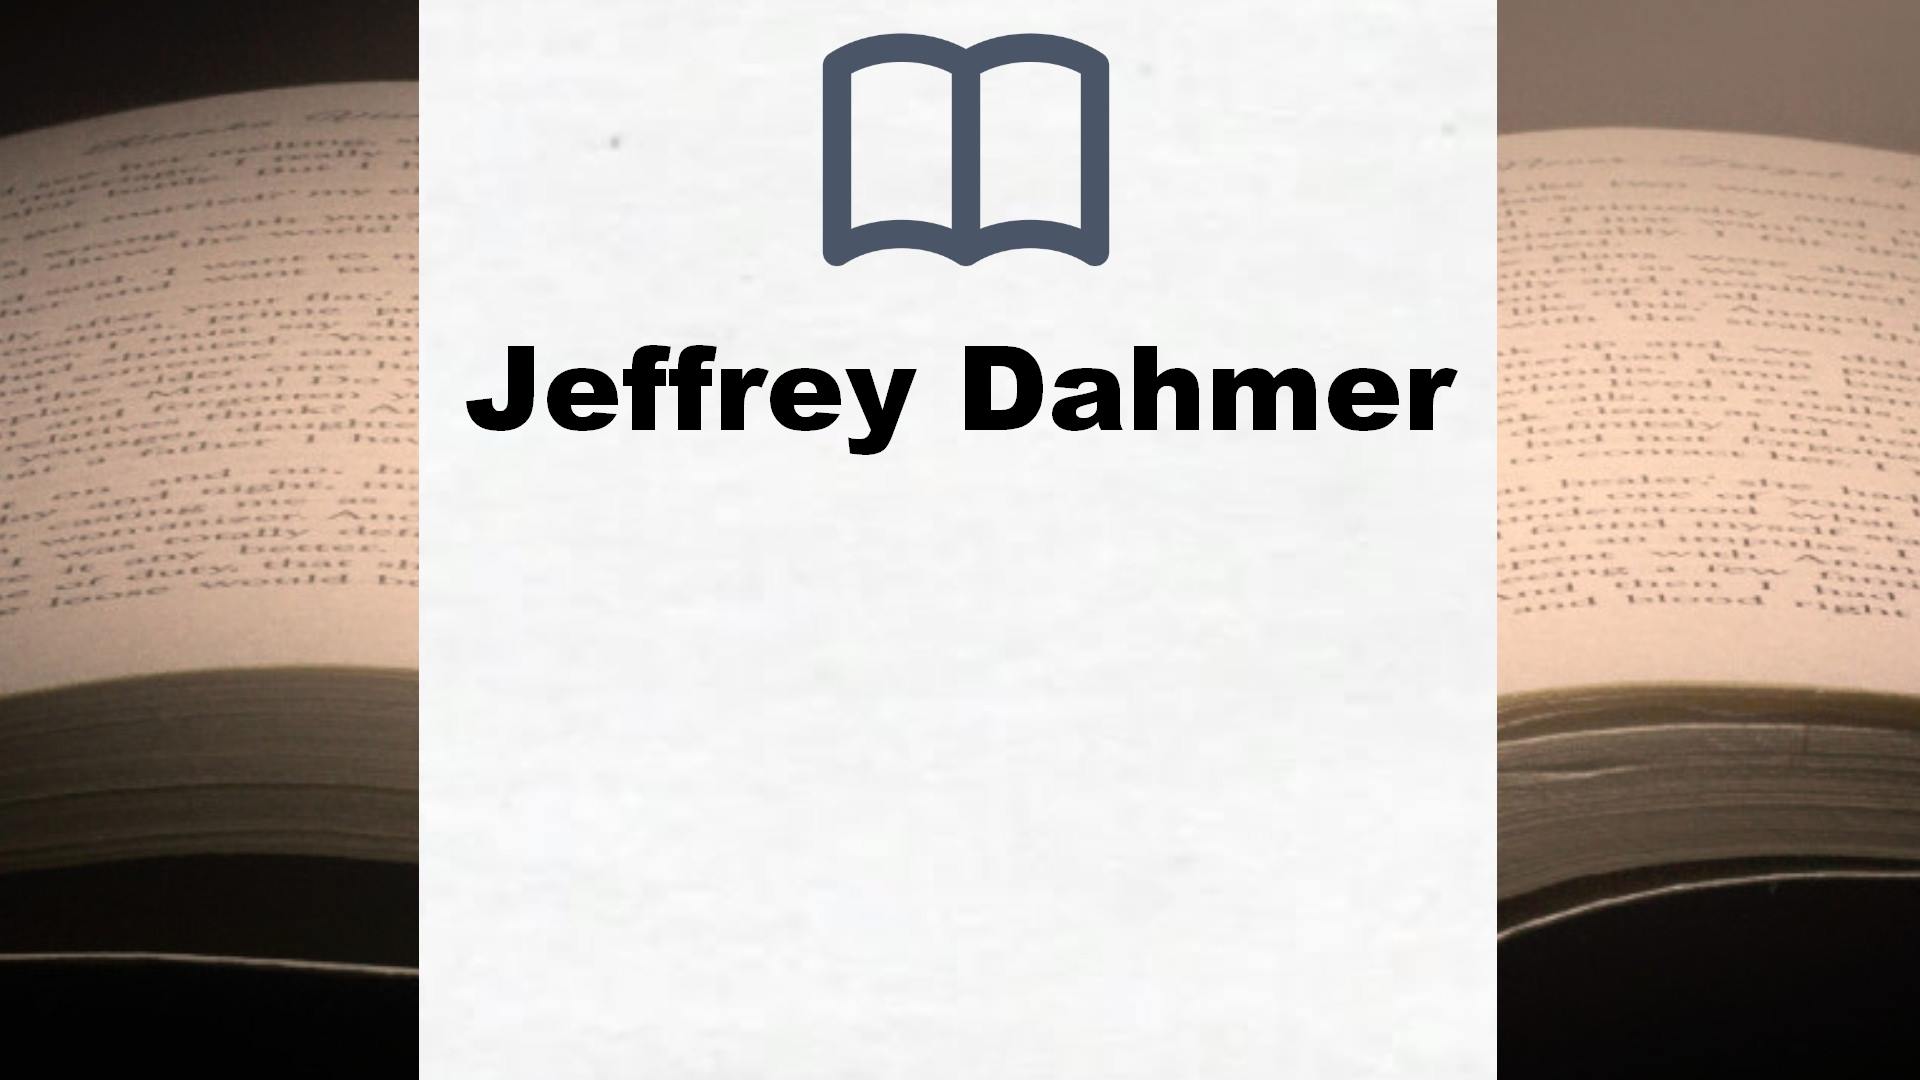 Bücher über Jeffrey Dahmer